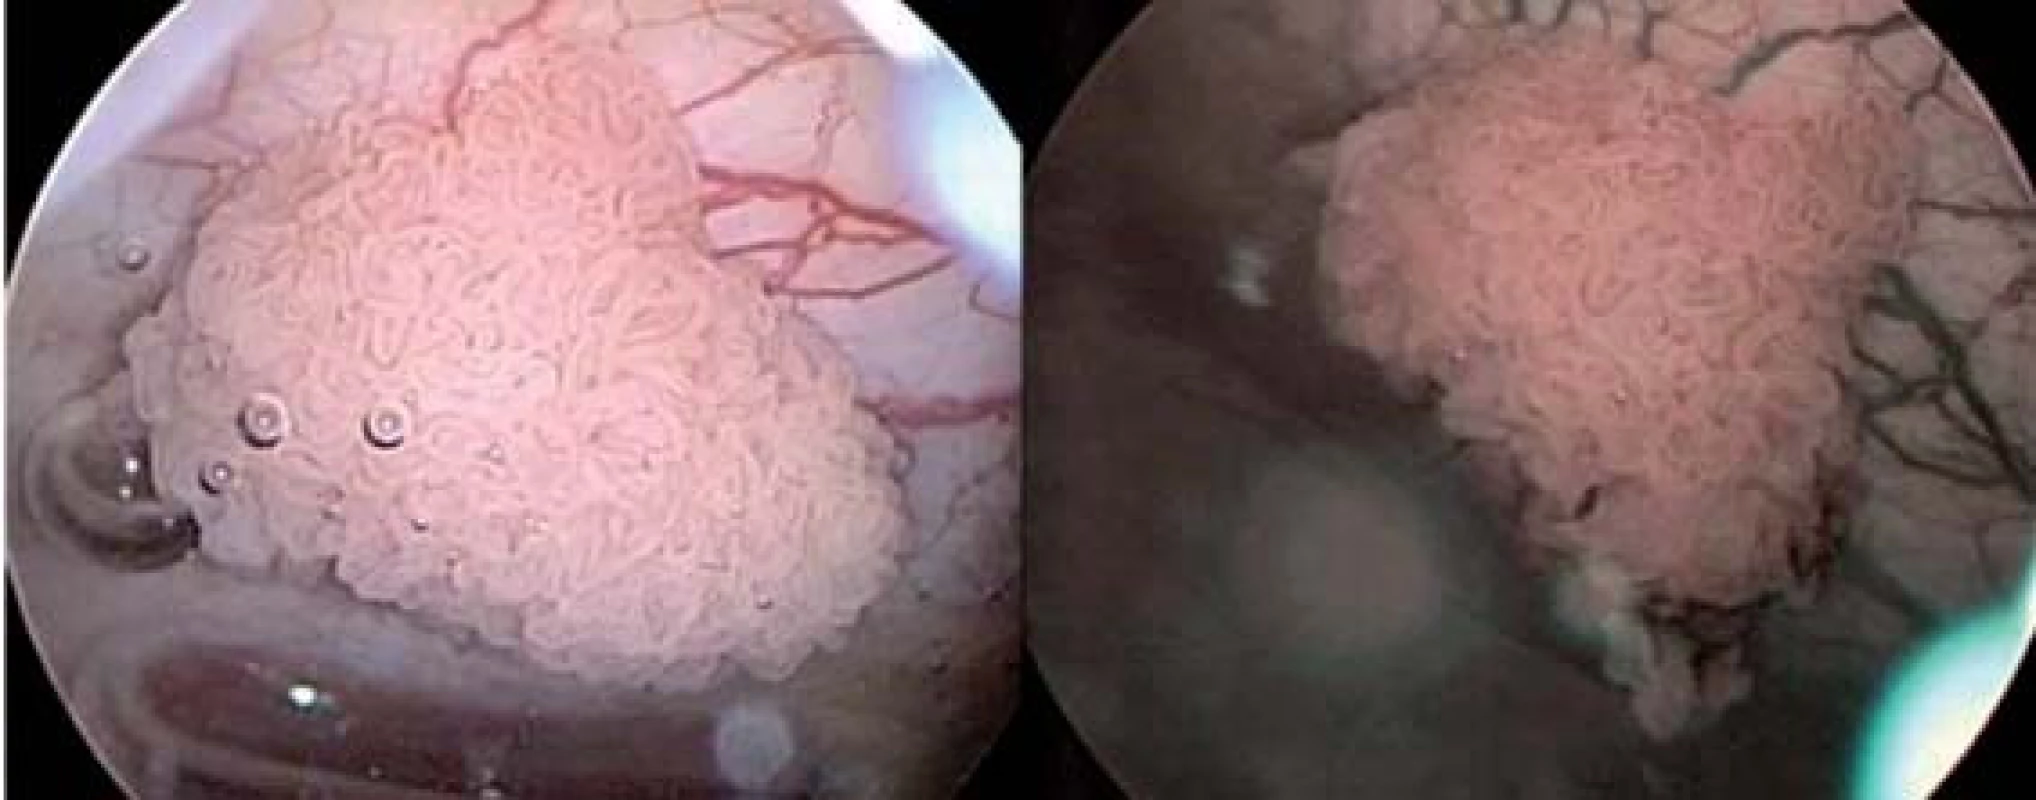 Obraz tumoru v konvenčním CSK obrazu vlevo a v NBI obrazu vpravo.